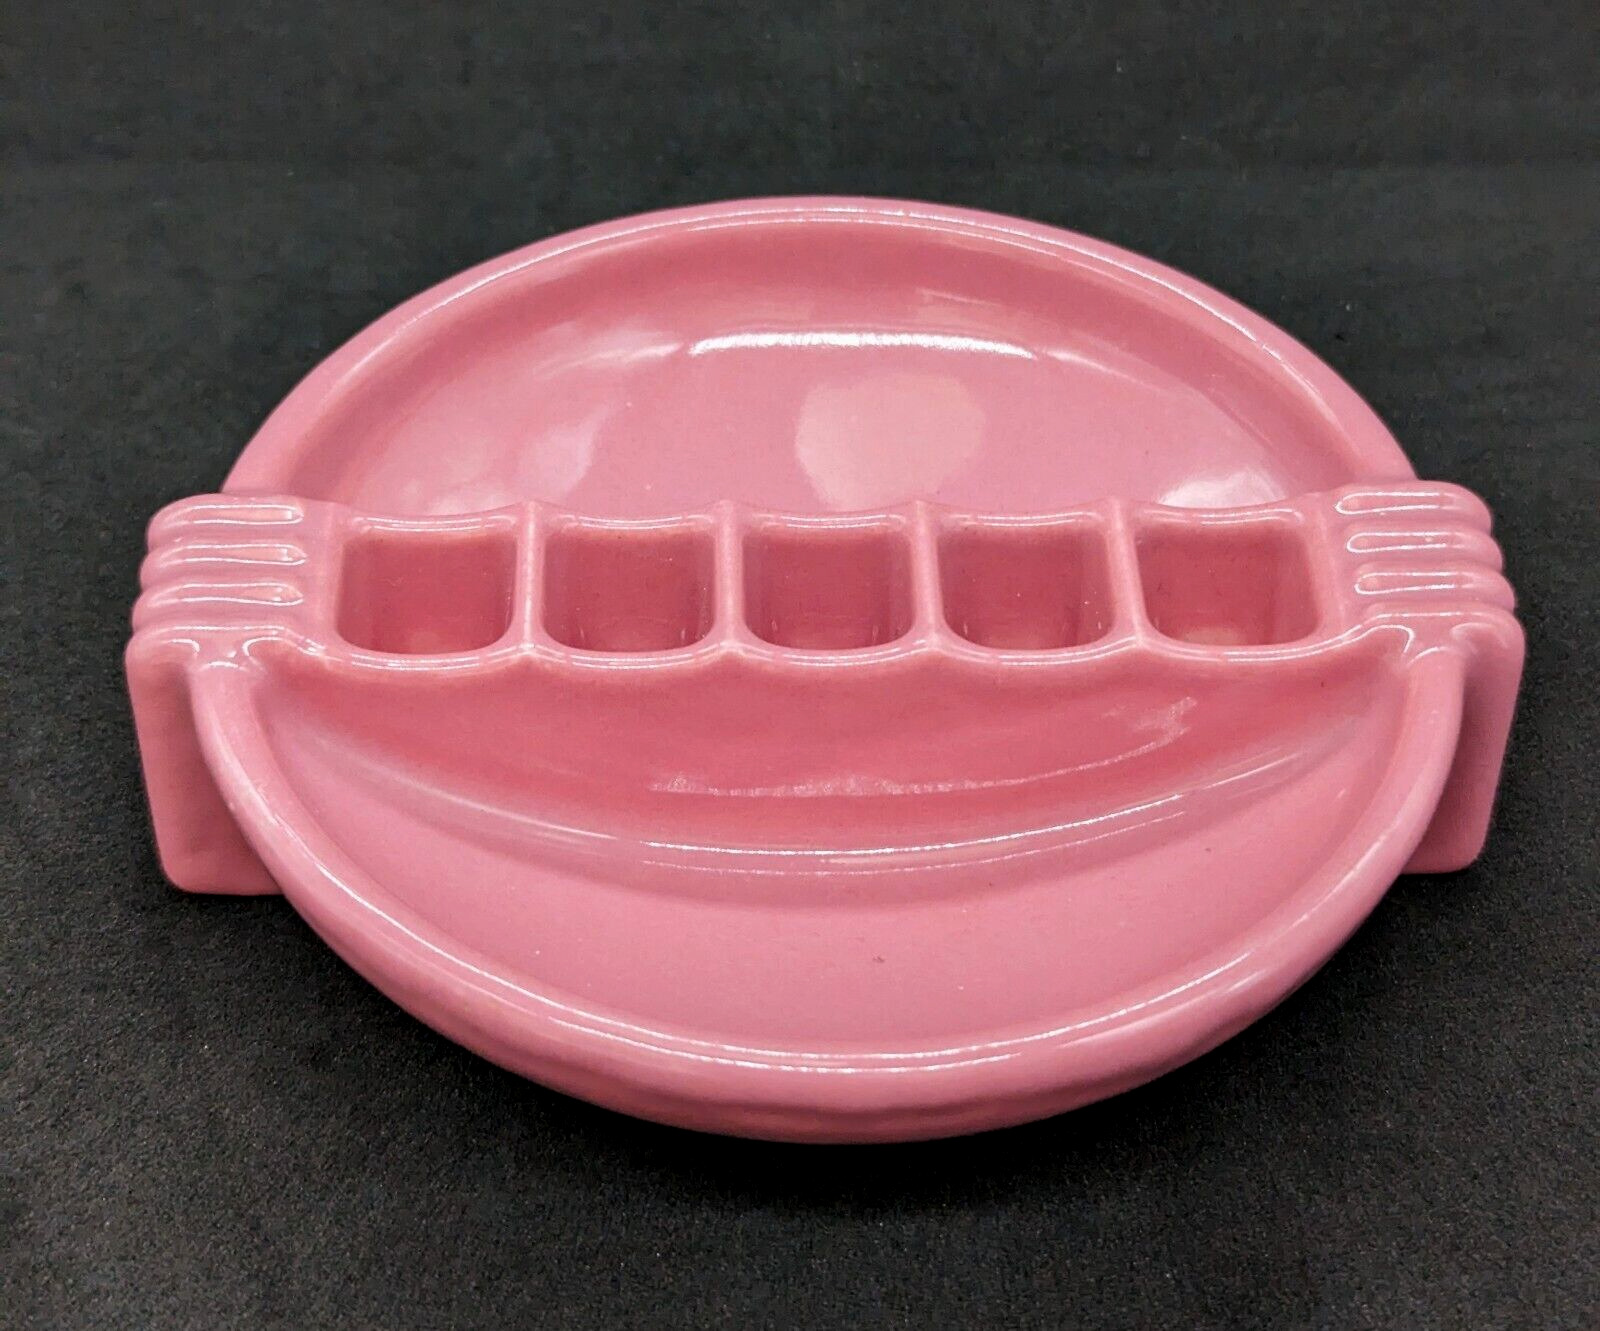 Vintage Art Deco Pink Porcelain Snuf-A-Rette Ceramic Ashtray, VG Cond.